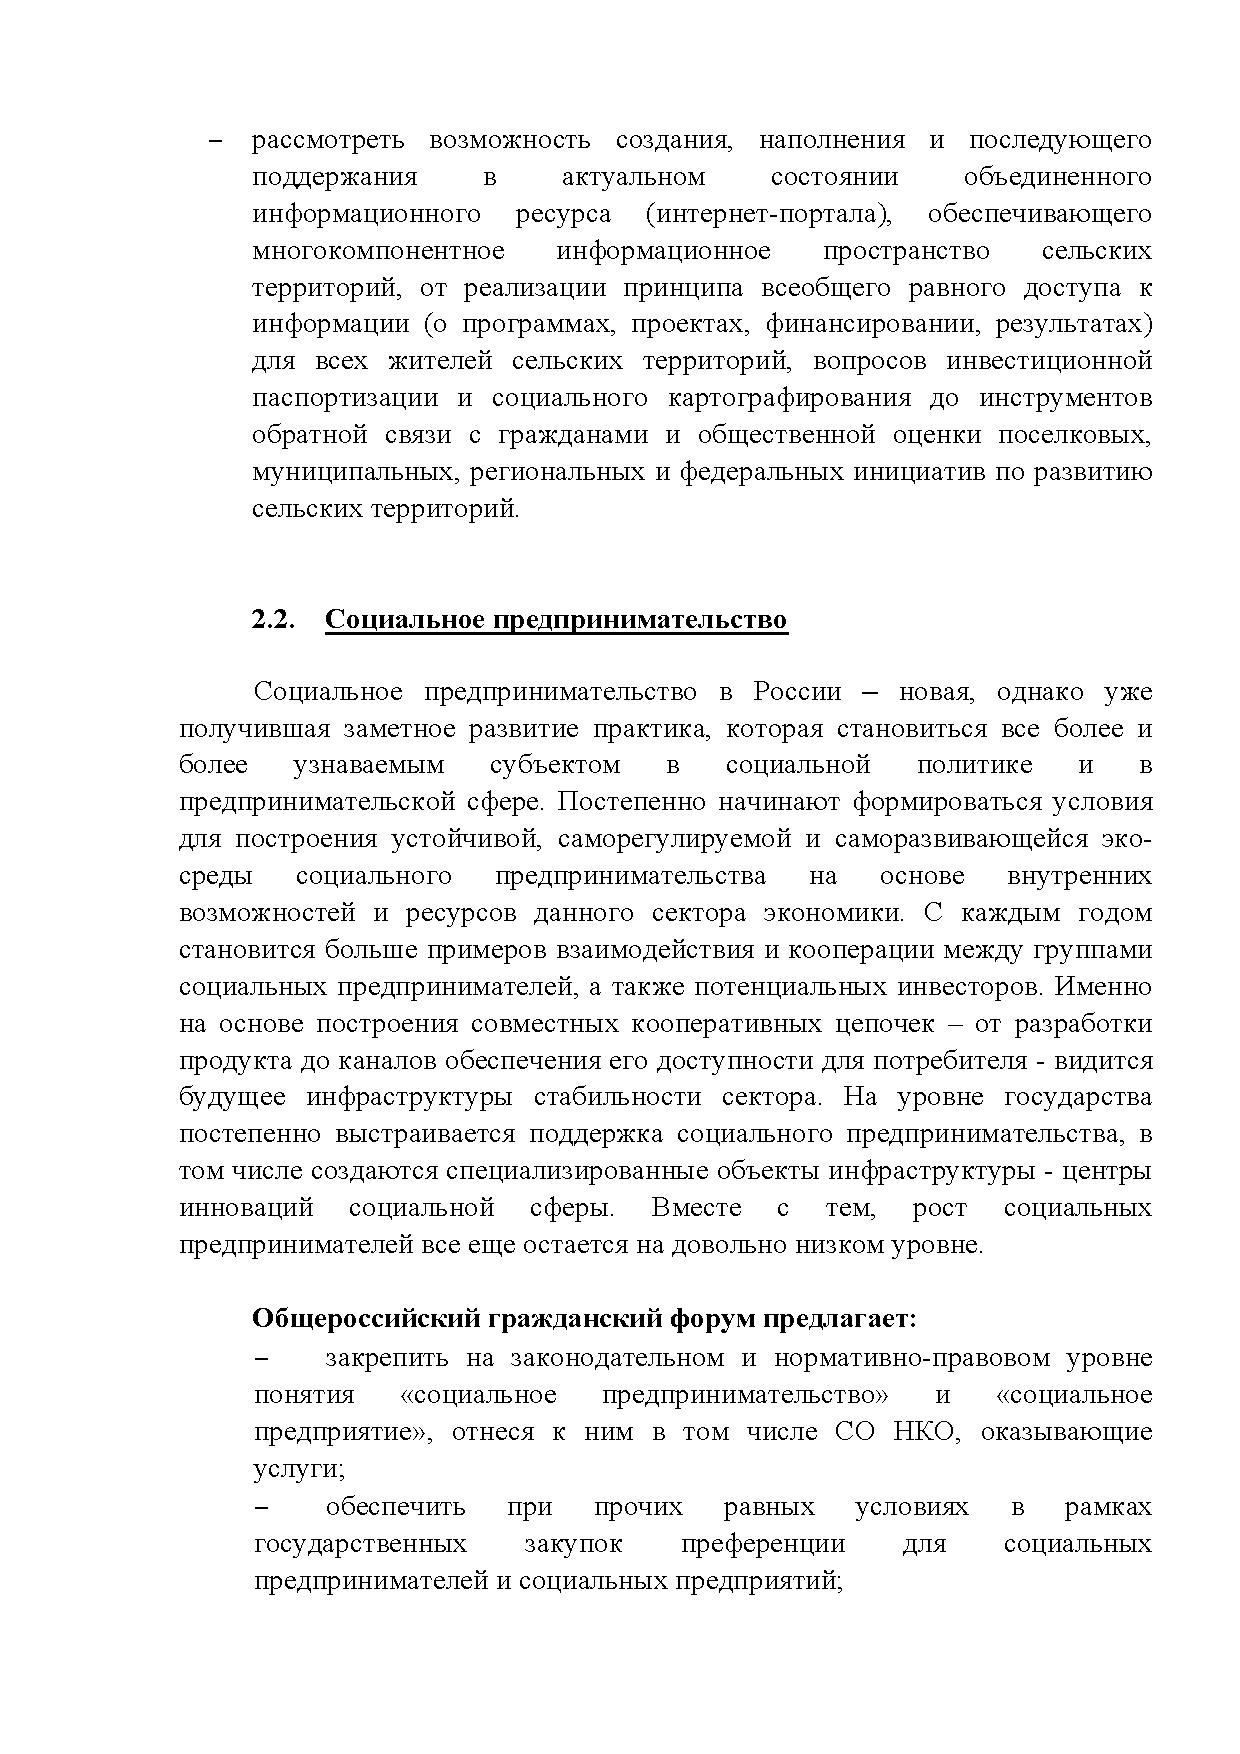  Опубликованы Предложения Общероссийского гражданского форума 2015 - фото 25